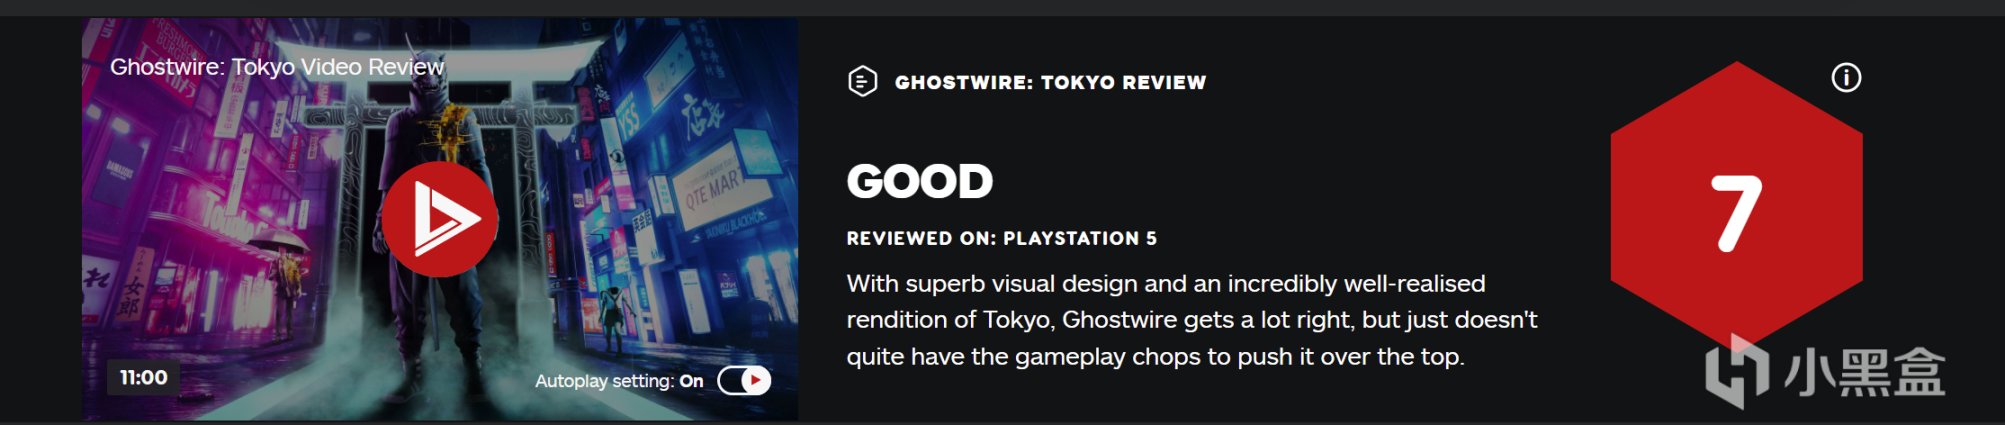 《幽灵线:东京》媒体评分解禁: M站均分74分 其中IGN 7分、GS 8分-第6张